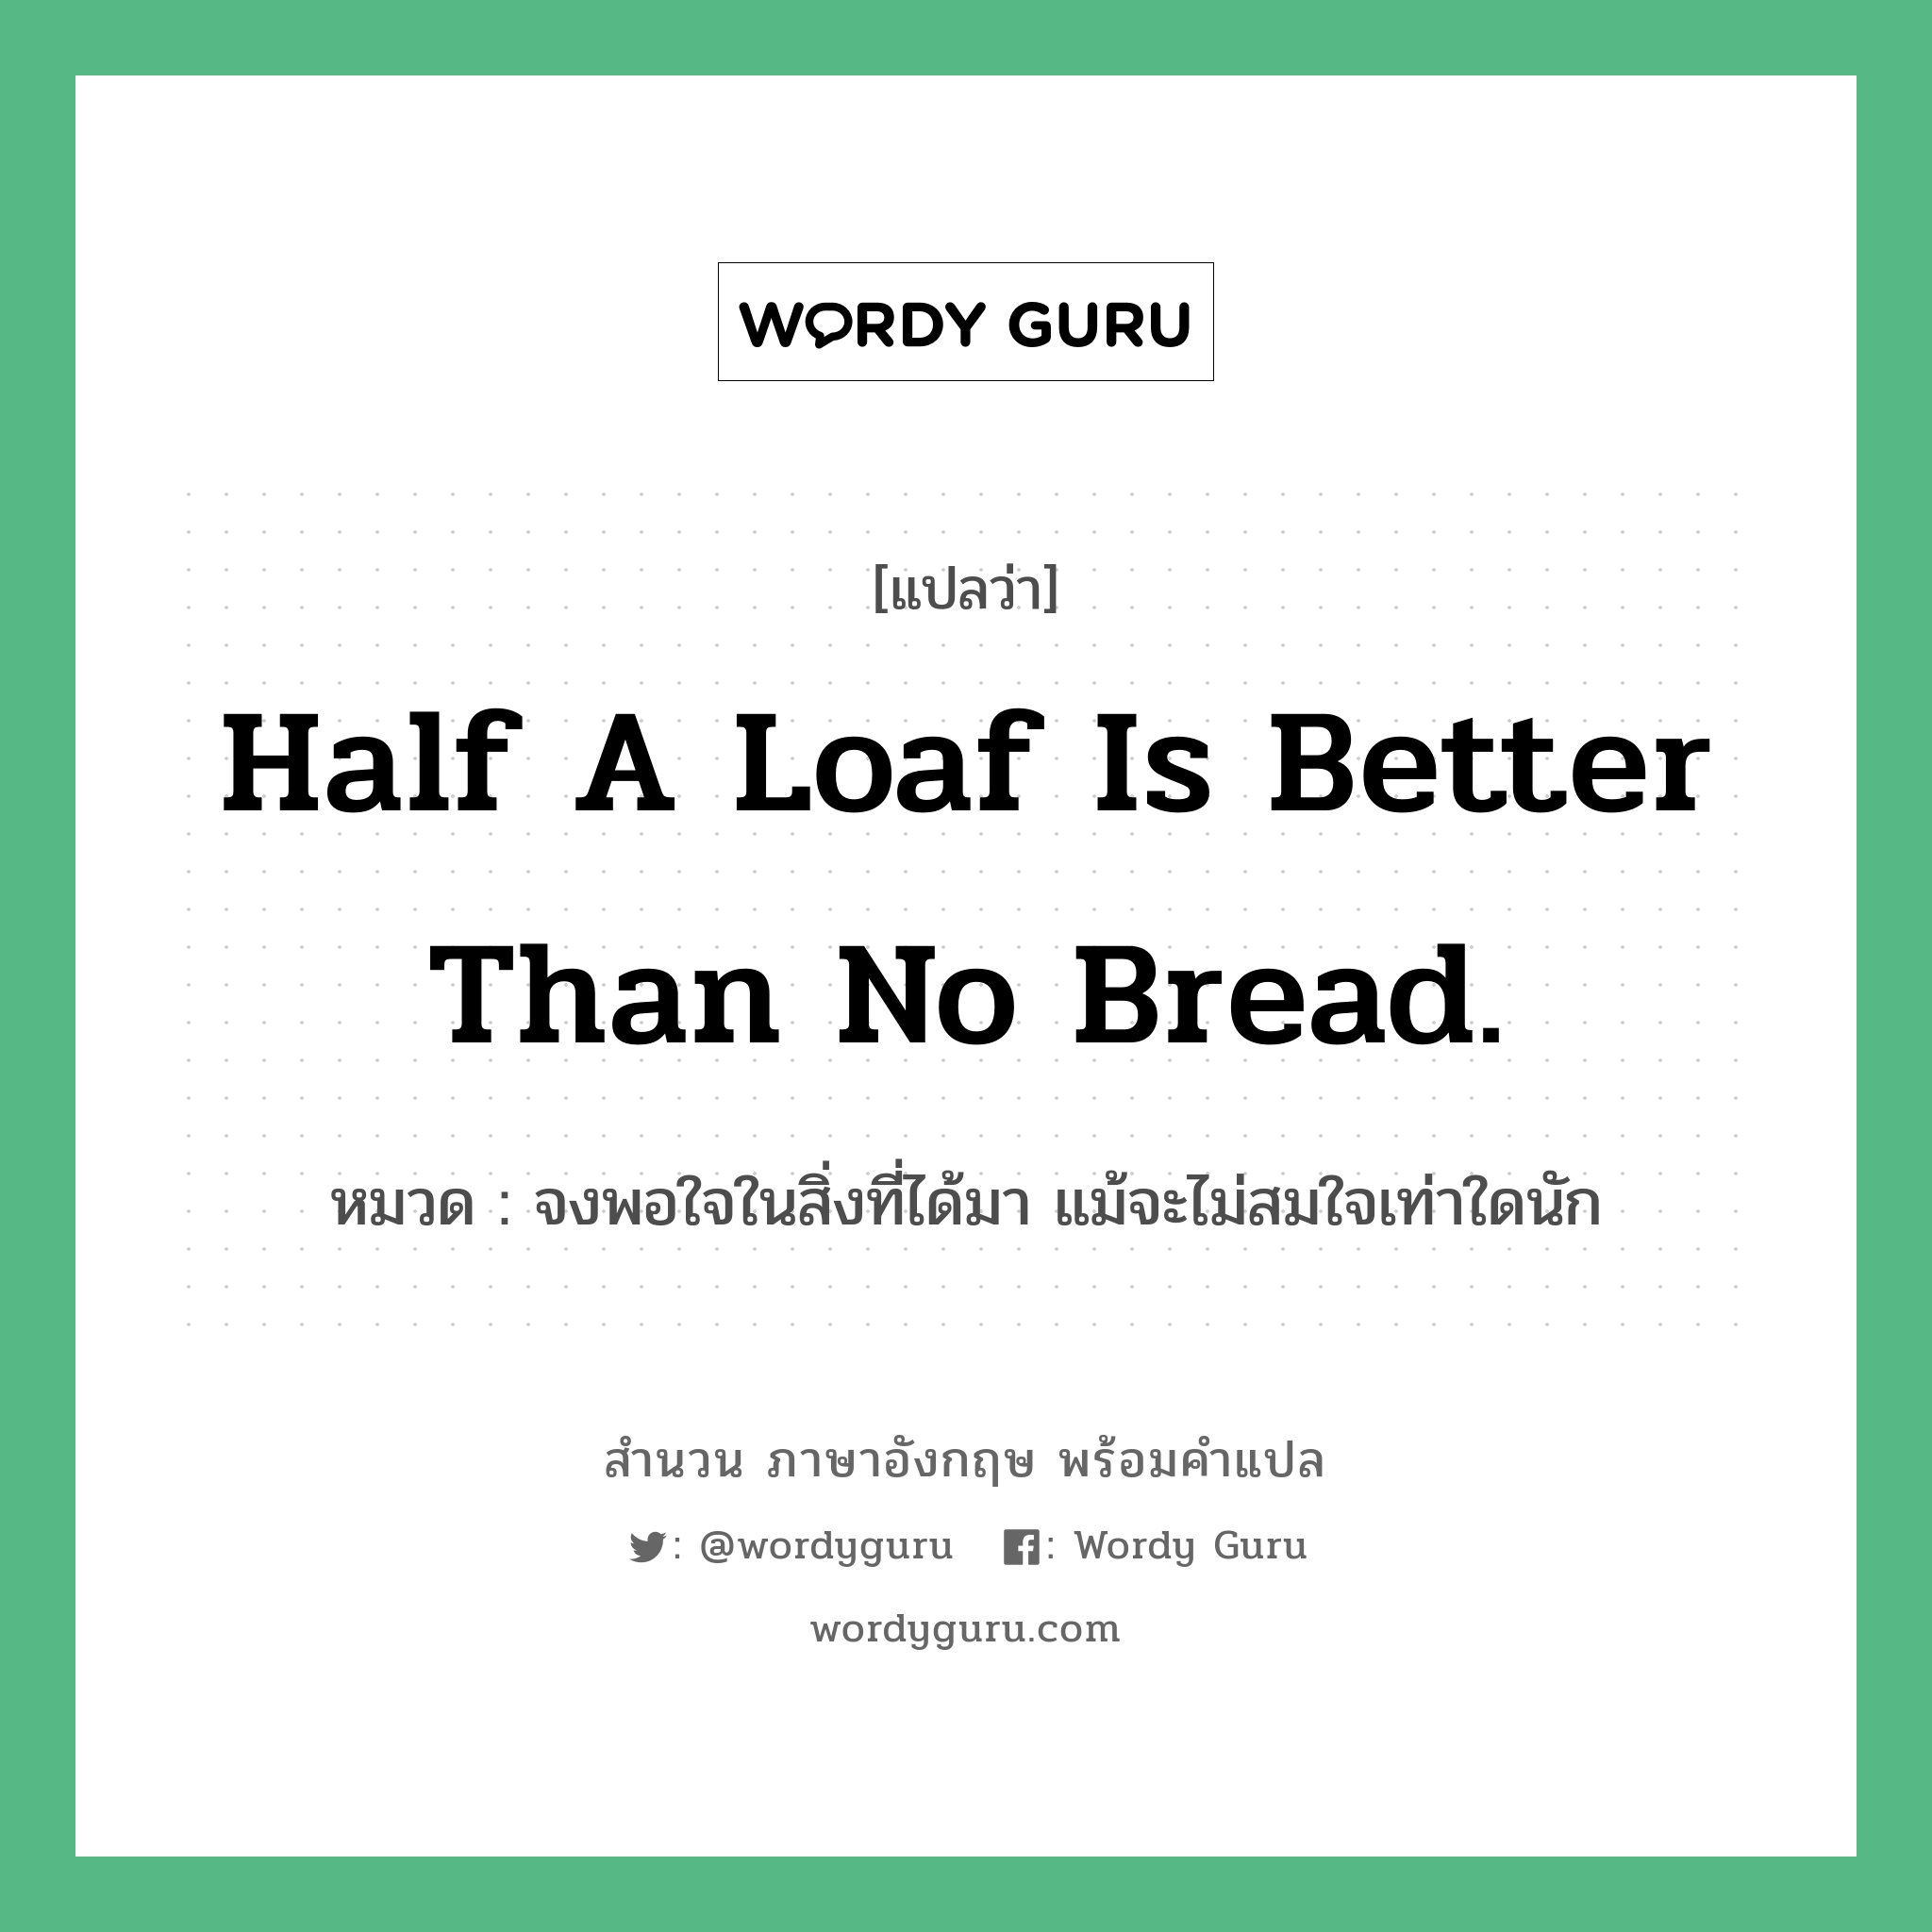 Half a loaf is better than no bread. แปลว่า?, สำนวนภาษาอังกฤษ Half a loaf is better than no bread. หมวด จงพอใจในสิ่งที่ได้มา แม้จะไม่สมใจเท่าใดนัก คำสุภาษิต ภาษาอังกฤษ หมวด คำสุภาษิต ภาษาอังกฤษ